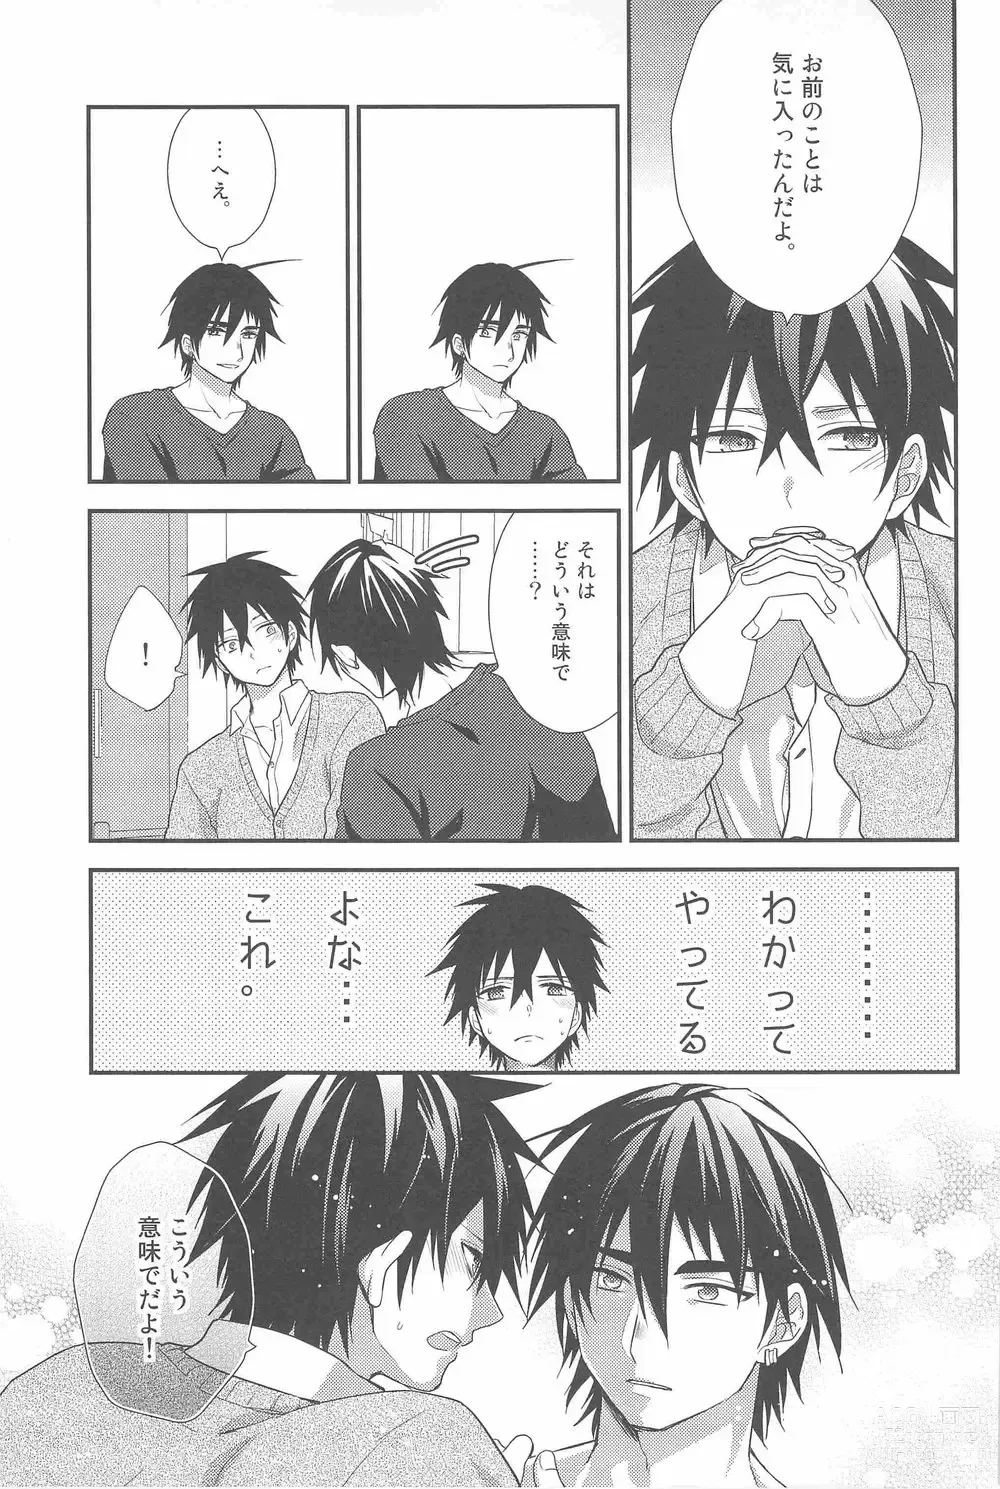 Page 6 of doujinshi Oshiete! Shindobaddo sensei!!